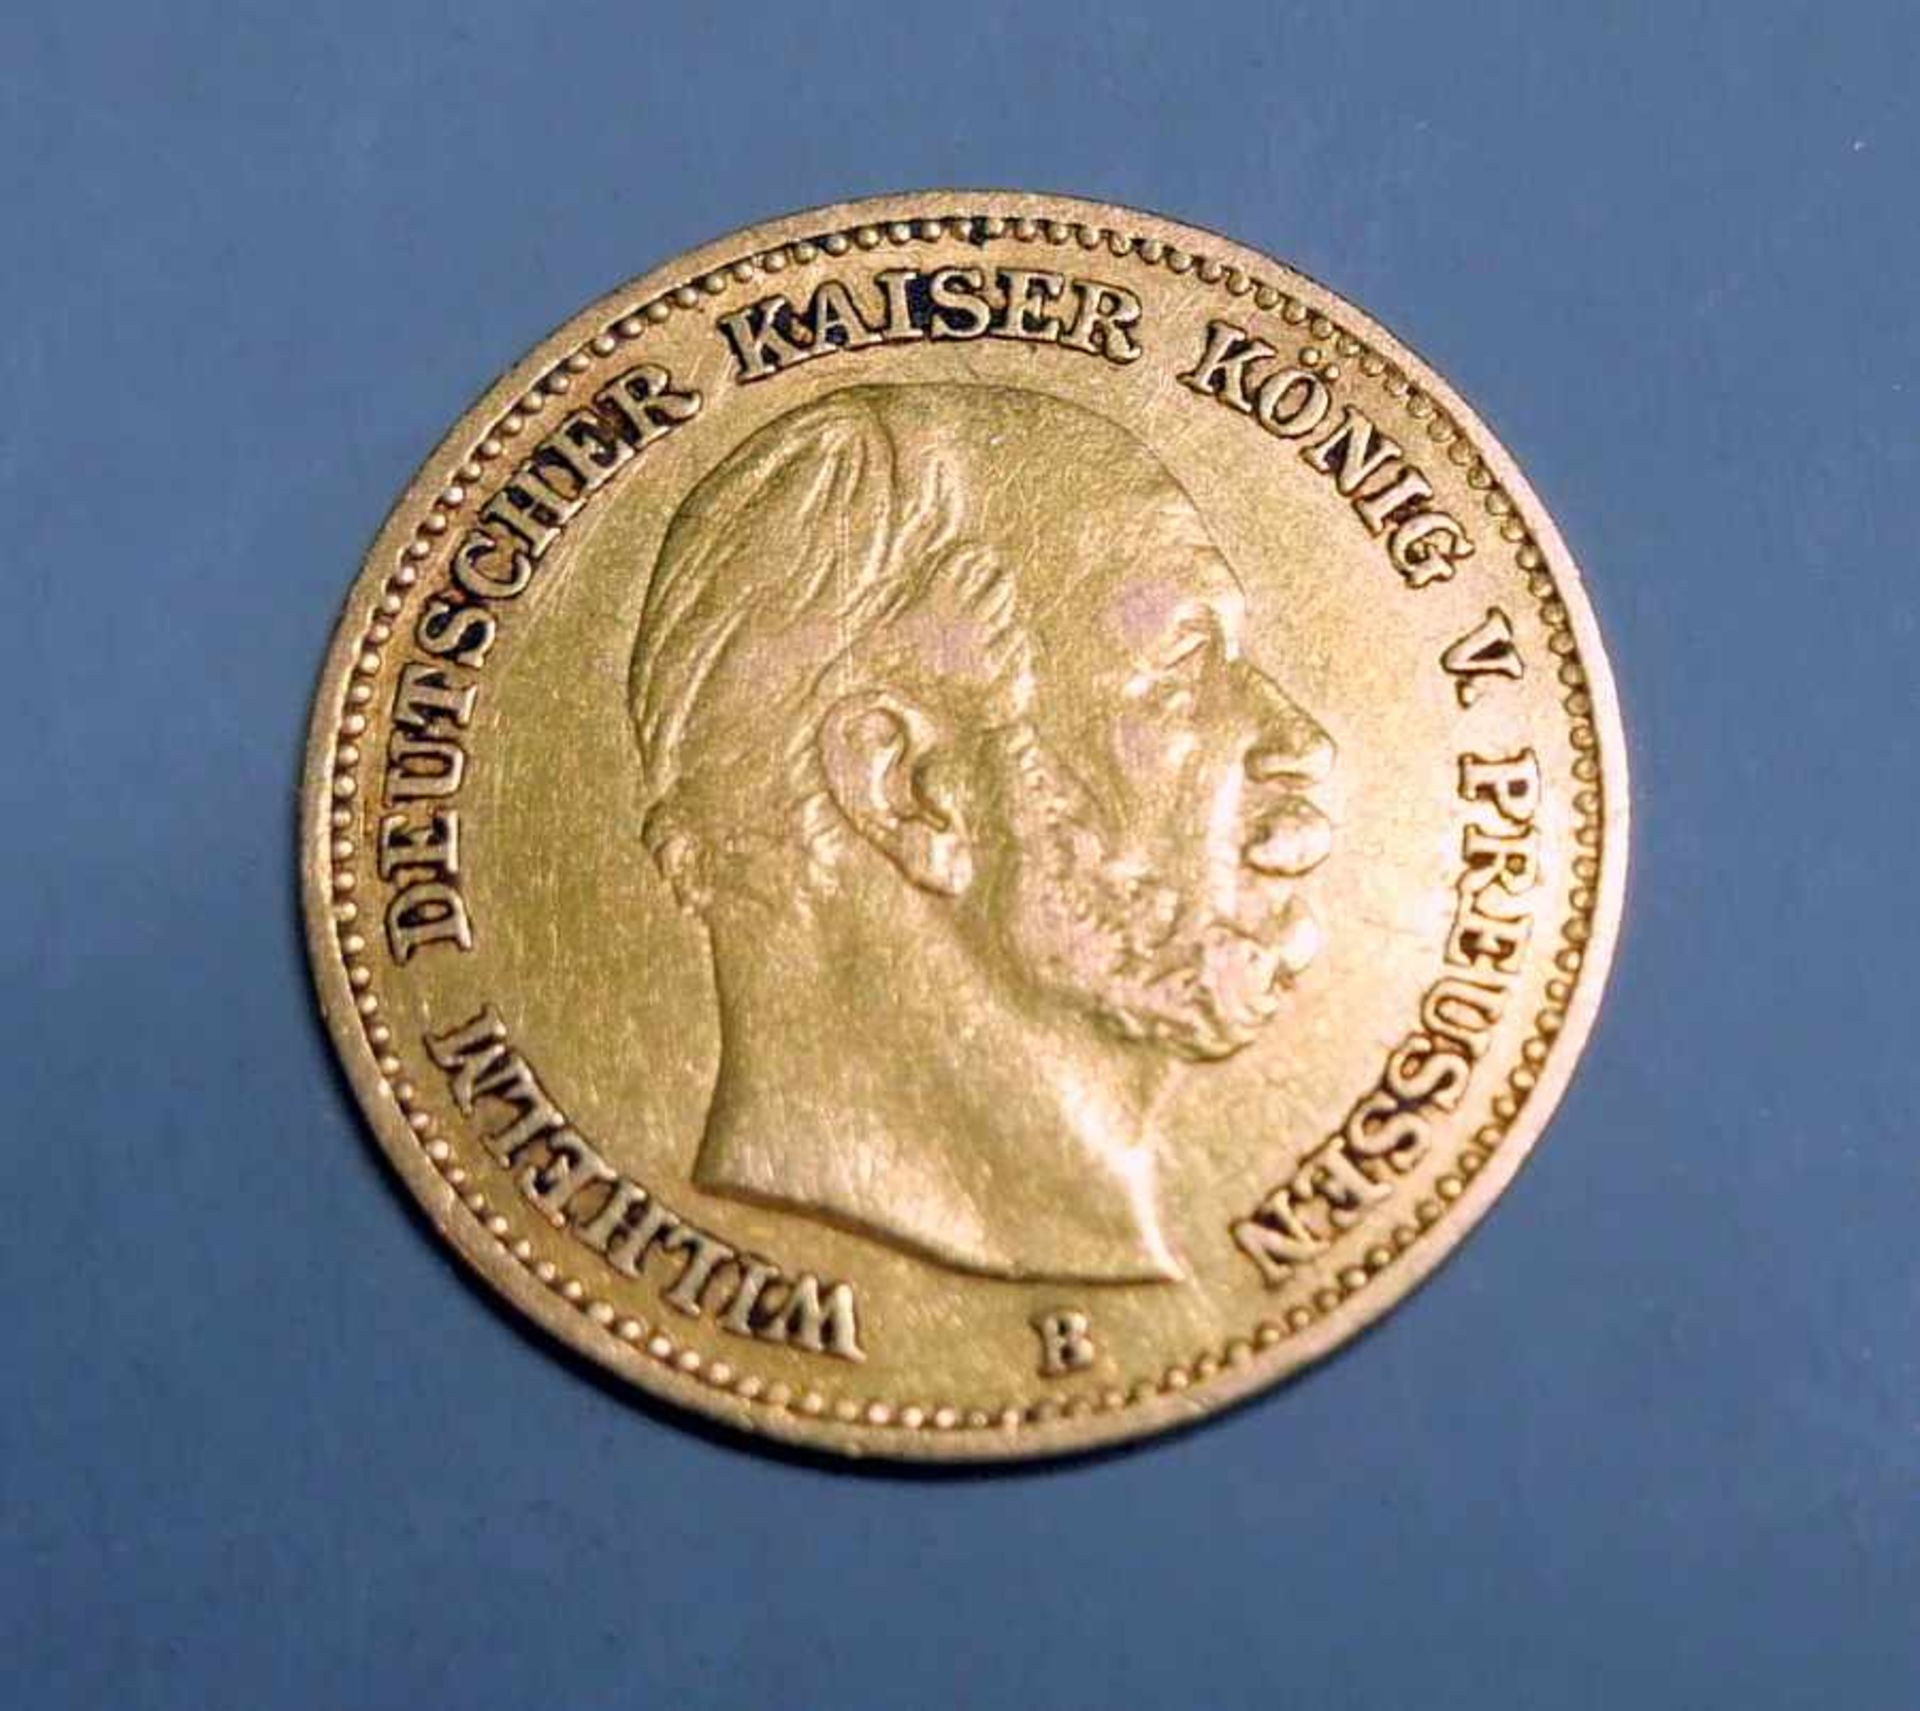 Goldmünze, 5 ReichsmarkGold. 5 Mark, Wilhelm deutscher Kaiser König v. Preussen. B. Deutschland,